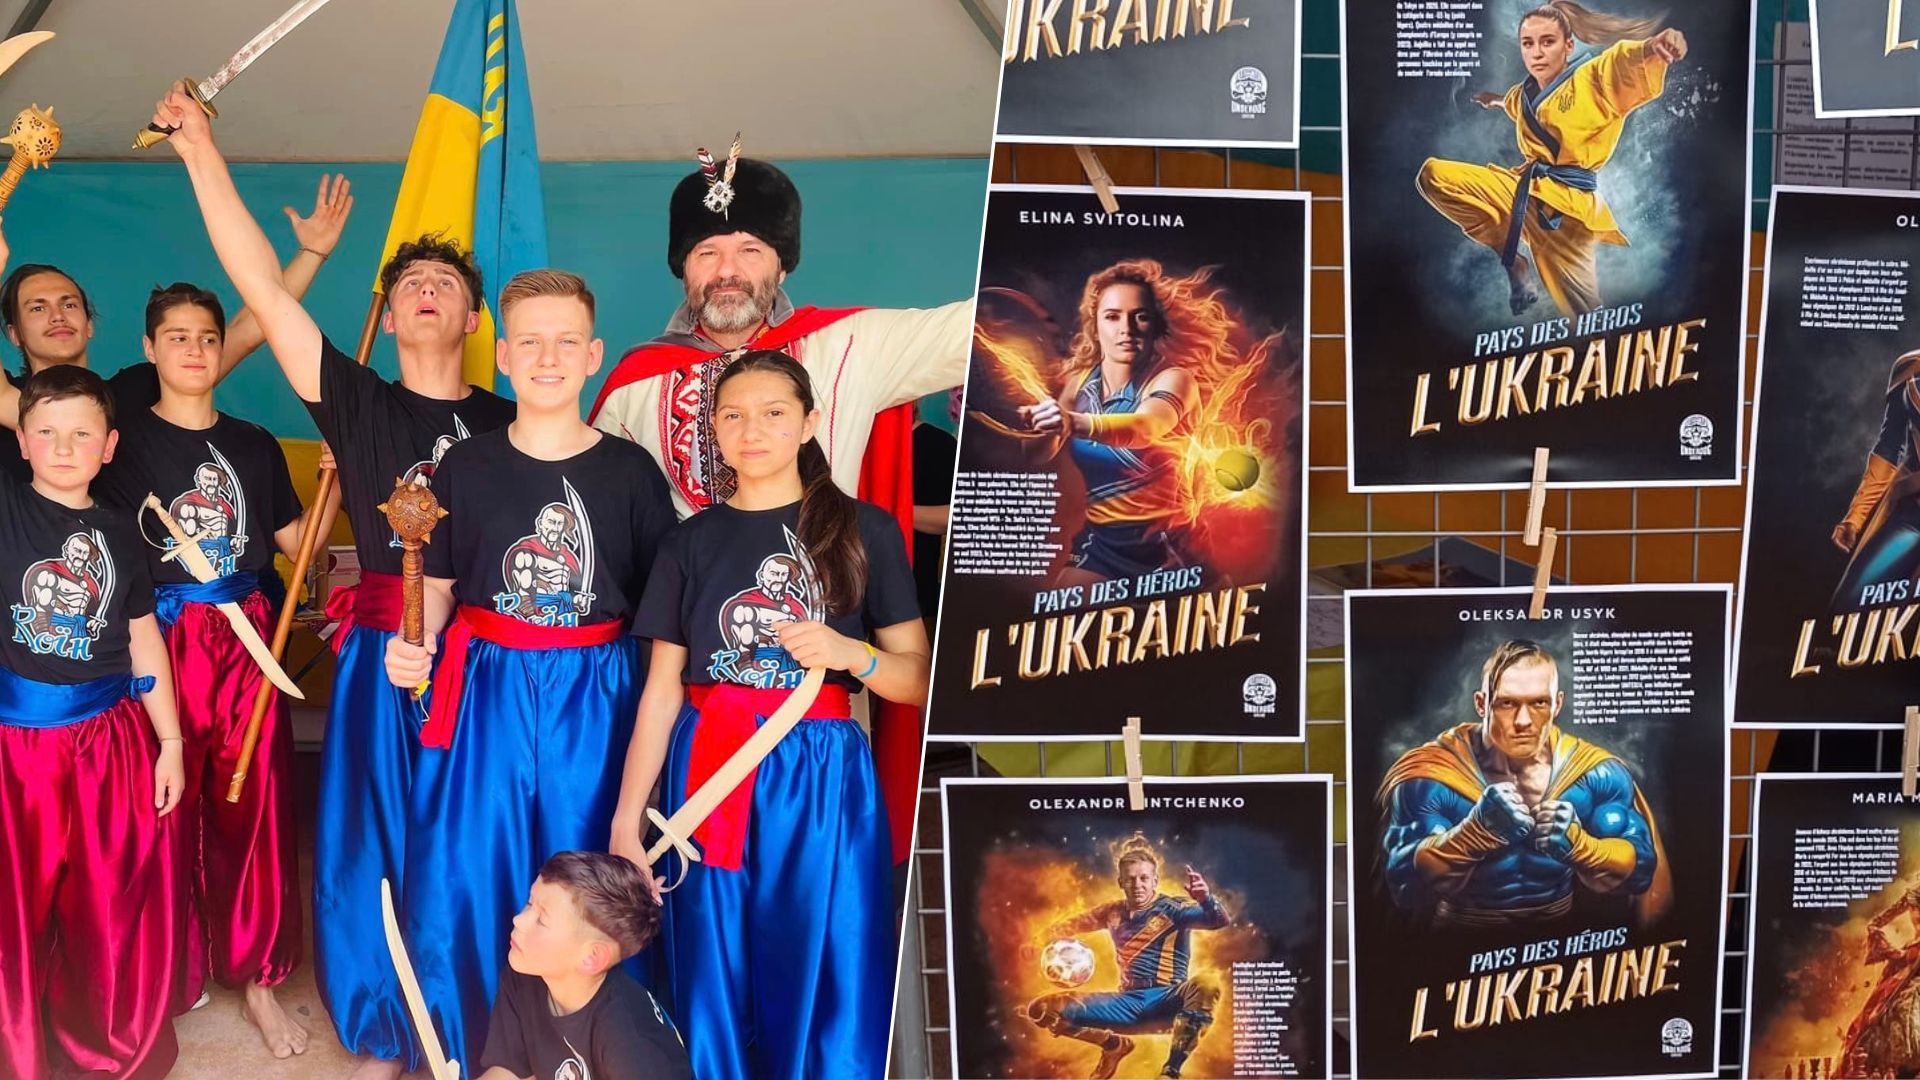 Консульские праздники в Лионе - Украина показала гопак детей и спортсменов-супергероев - 24 Канал